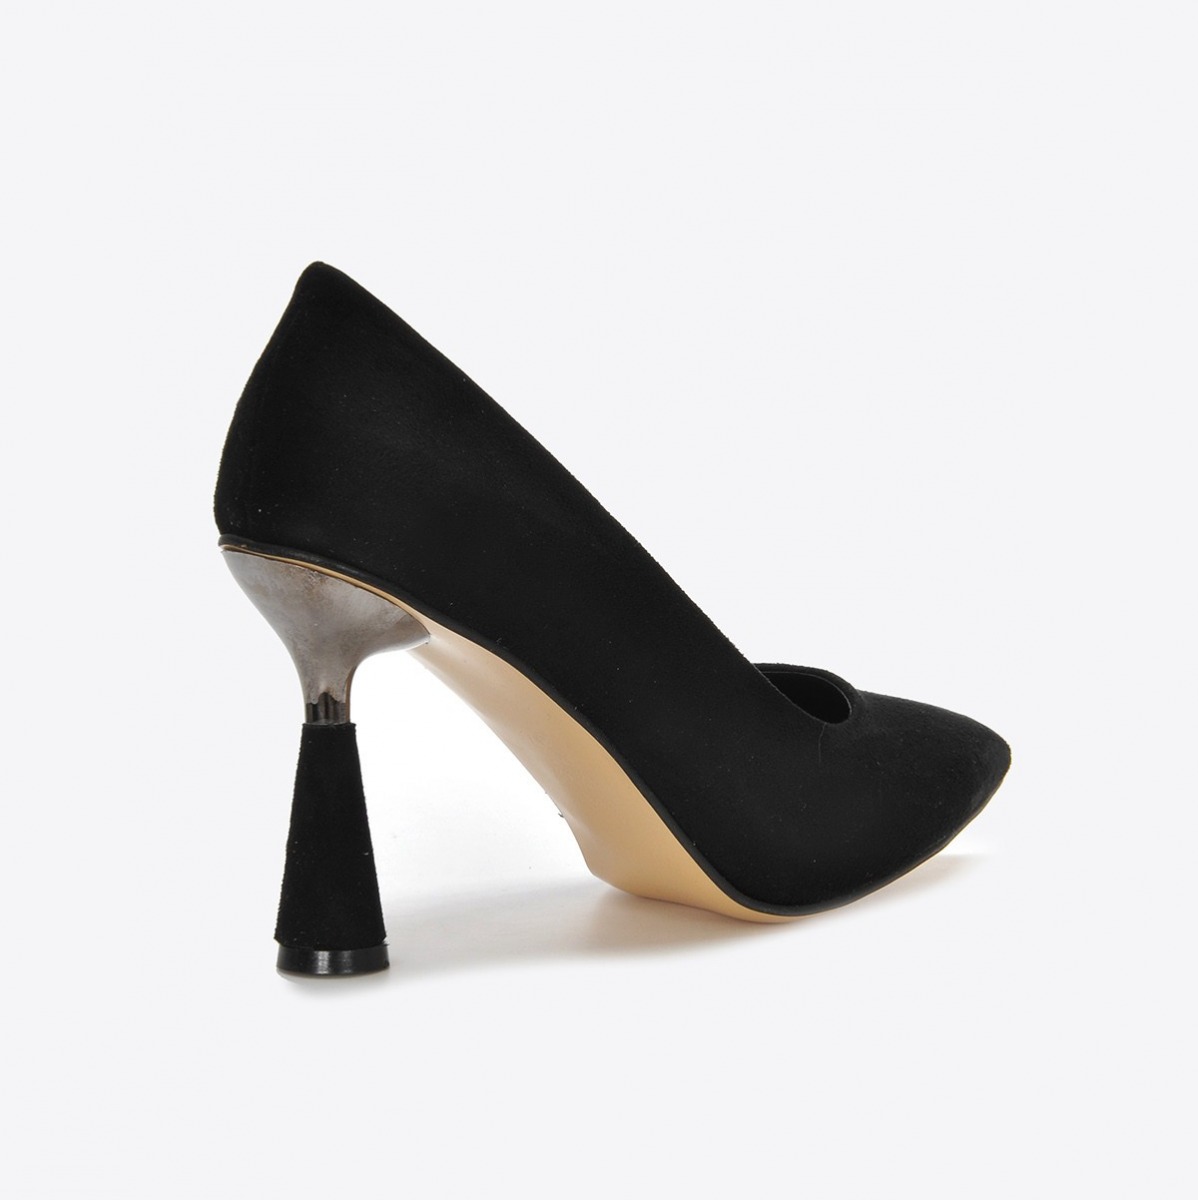 Flo Kadın Siyah Süet Klasik Topuklu Ayakkabı VZN21-037Y. 4